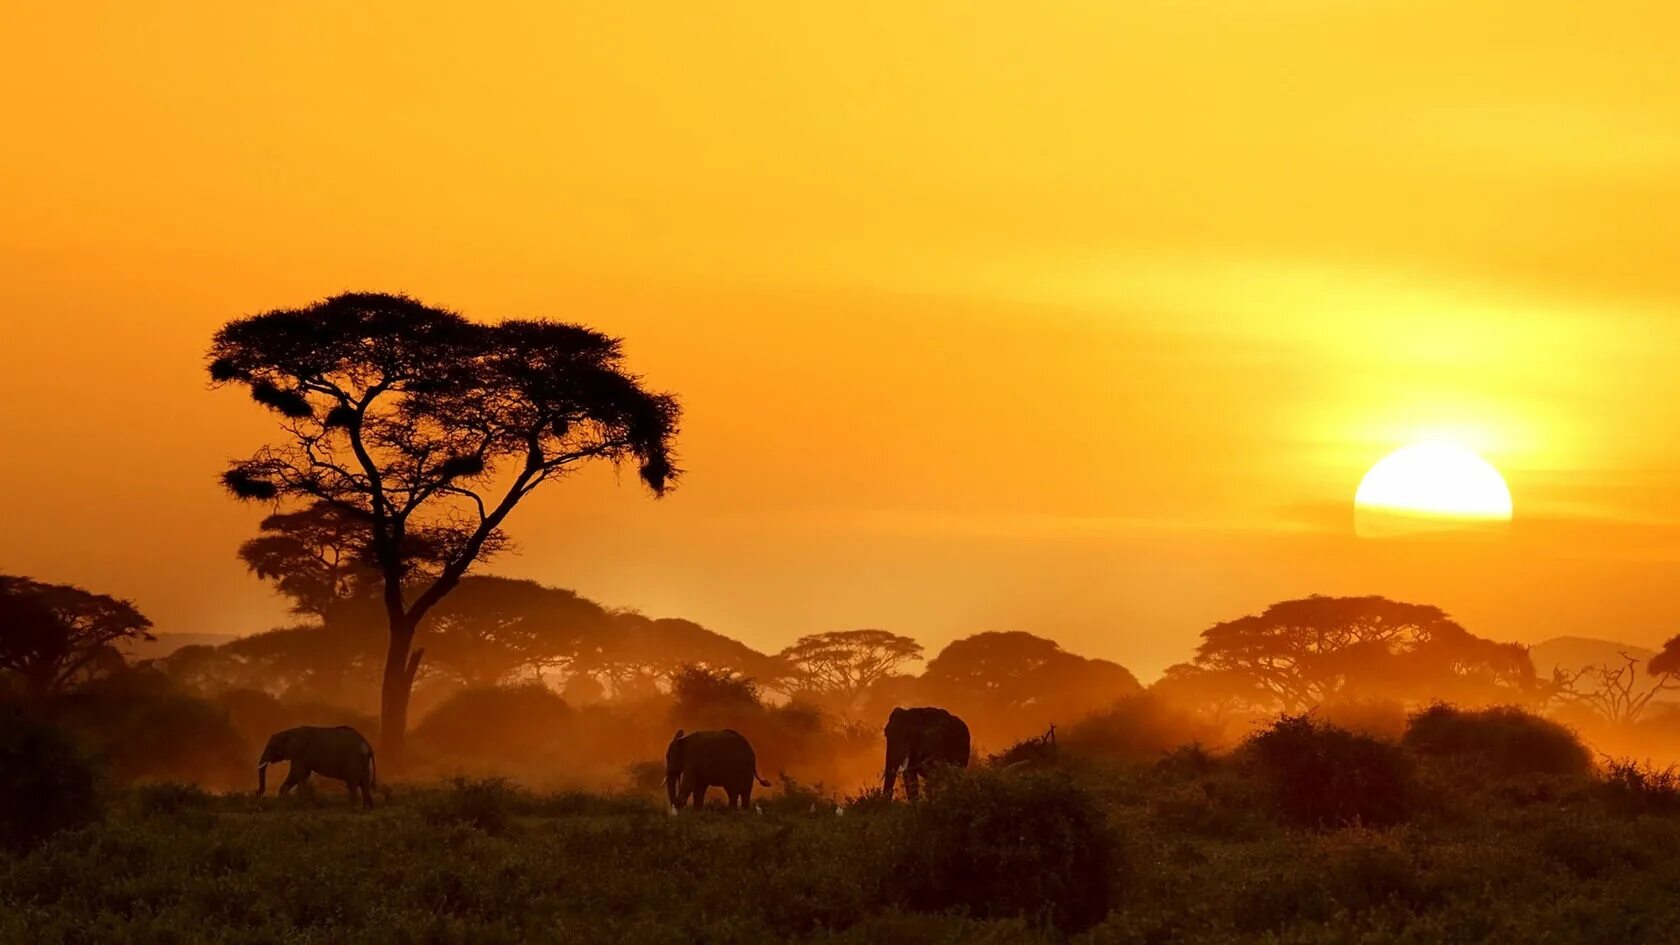 Саванной восточной африки. Национальный парк Амбосели Кения.